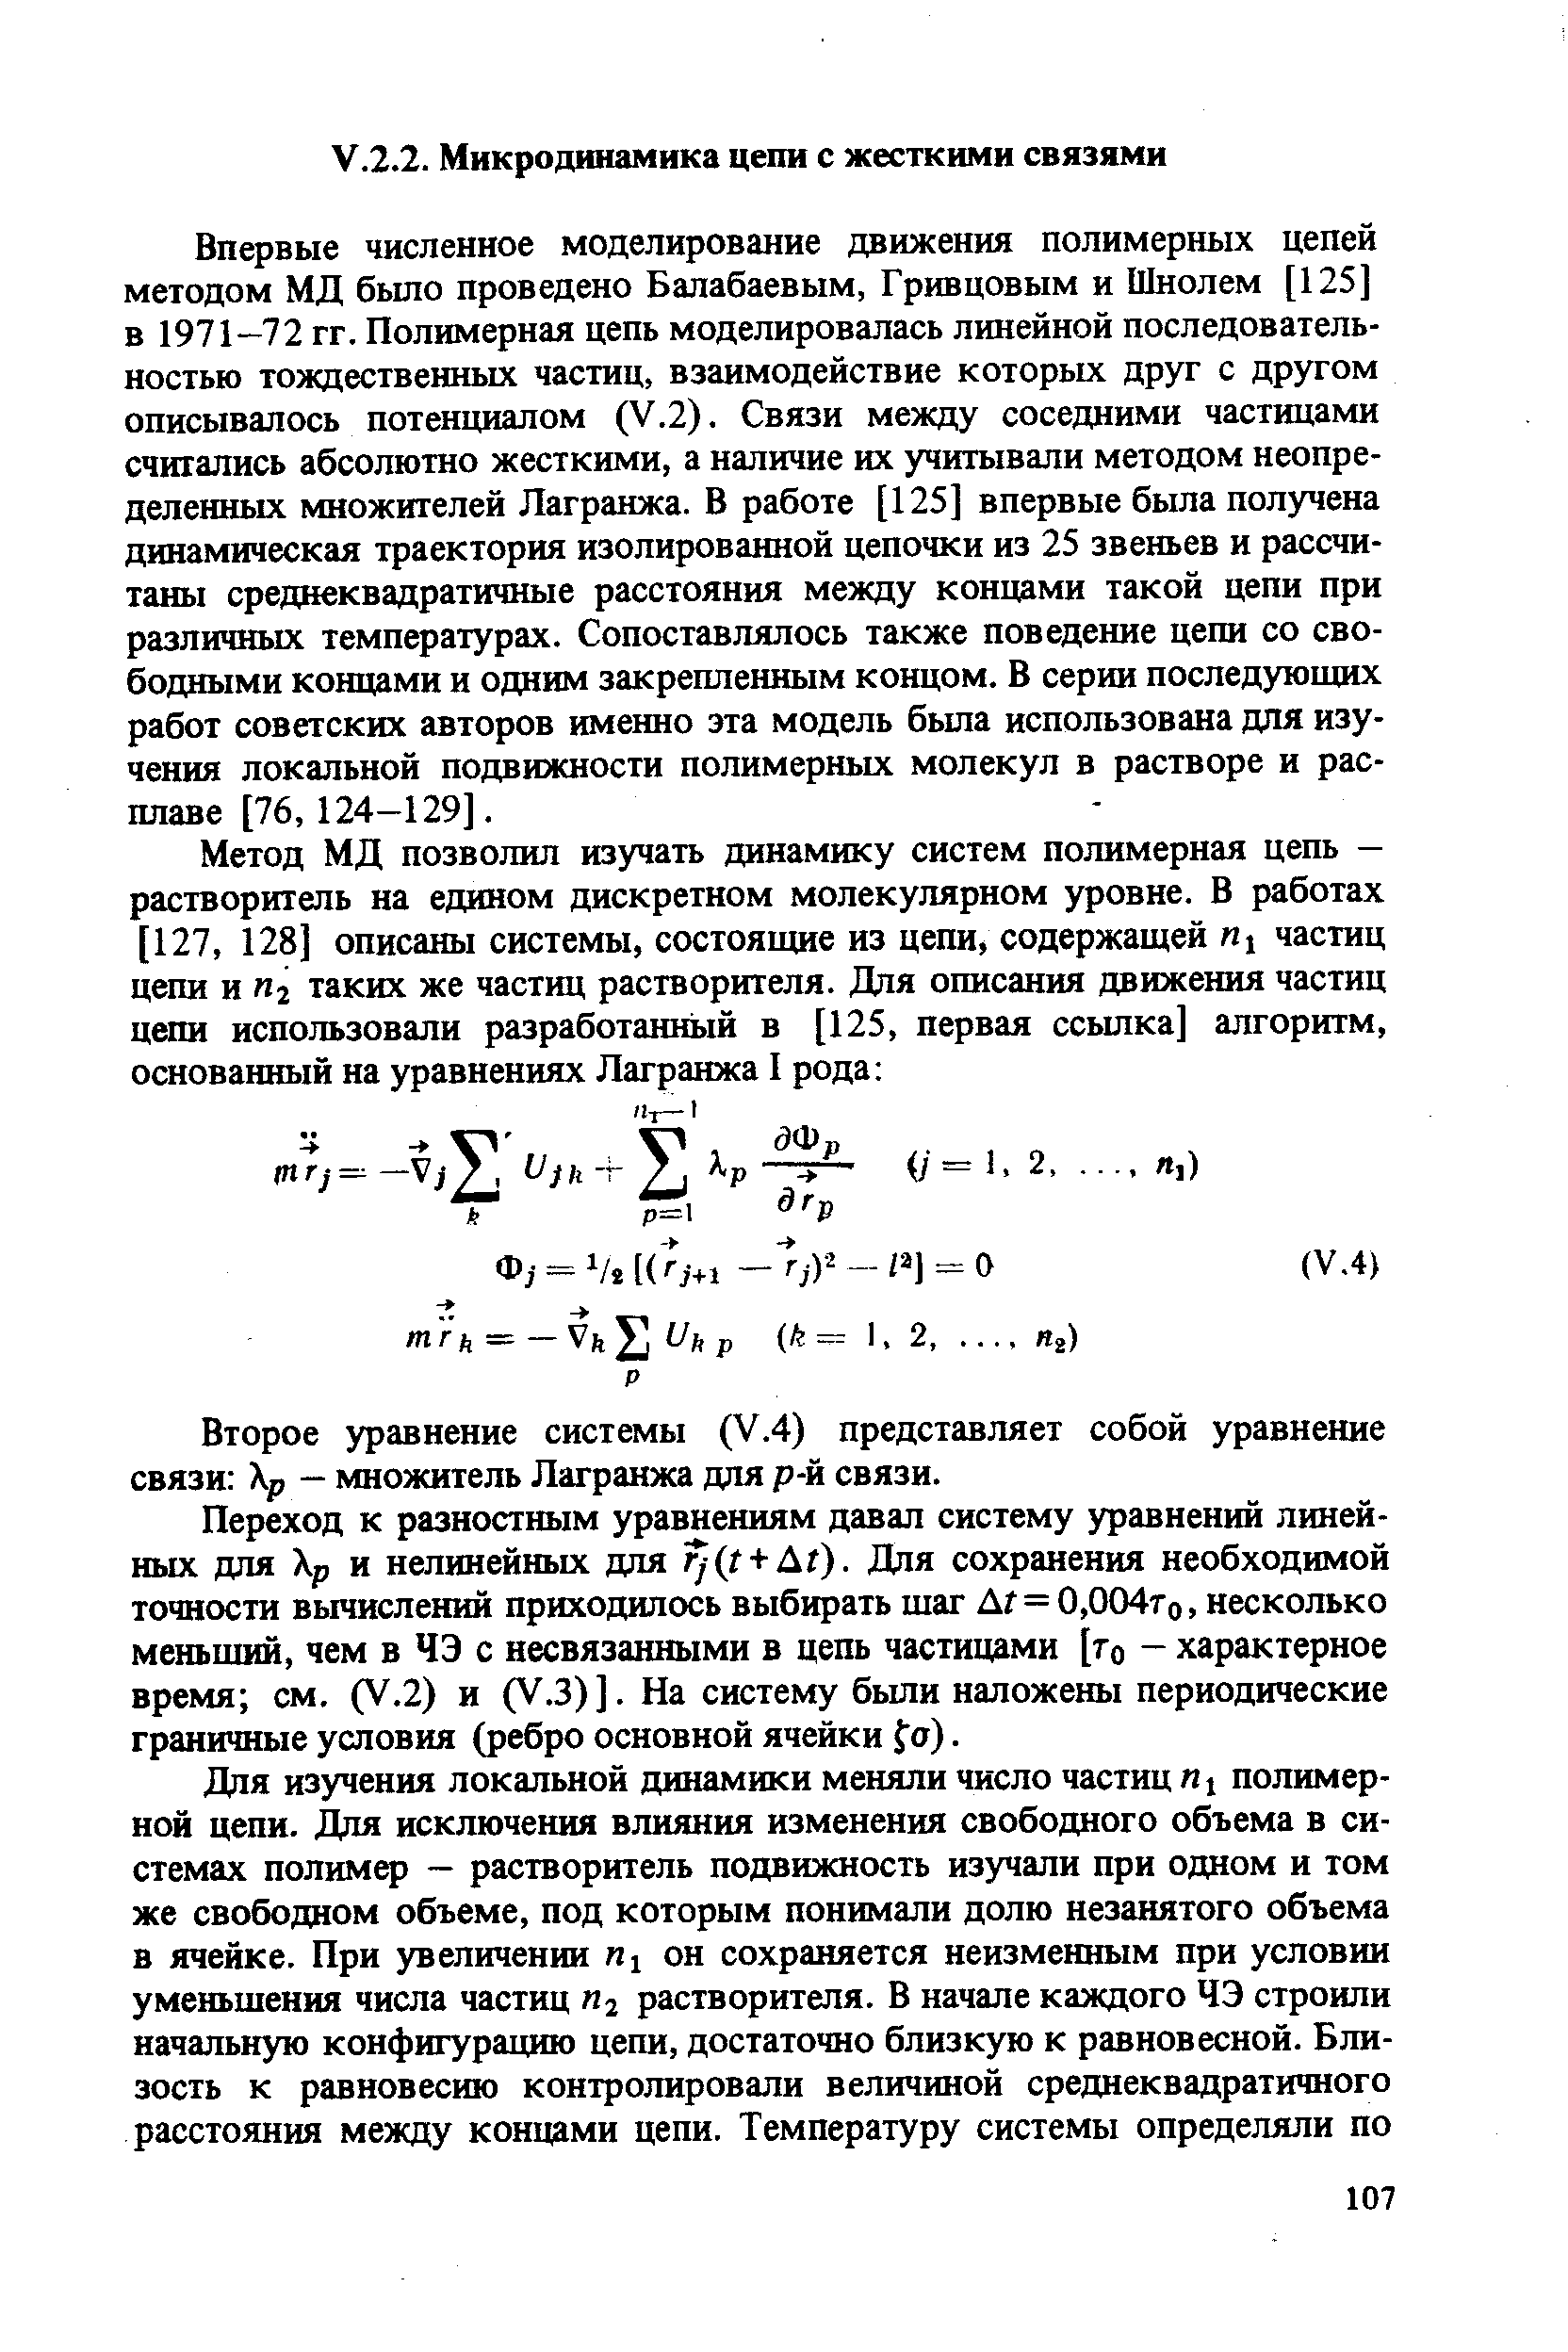 Впервые численное моделирование движения полимерных цепей методом МД было проведено Балабаевым, Гривцовым и Шнолем [125] в 1971—72 гг. Полимерная цепь моделировалась линейной последовательностью тождественных частиц, взаимодействие которых друг с другом описывалось потенциалом (У.2). Связи между соседними частицами считались абсолютно жесткими, а наличие их учитывали методом неопределенных множителей Лагранжа. В работе [125] впервые была получена динамическая траектория изолированной цепочки из 25 звеньев и рассчитаны среднеквадратичные расстояния между концами такой цепи при различных температурах. Сопоставлялось также поведение цепи со свободными концами и одним закрепленным концом. В серии последующих работ советских авторов именно эта модель была использована для изучения локальной подвижности полимерных молекул в растворе и расплаве [76, 124-129].